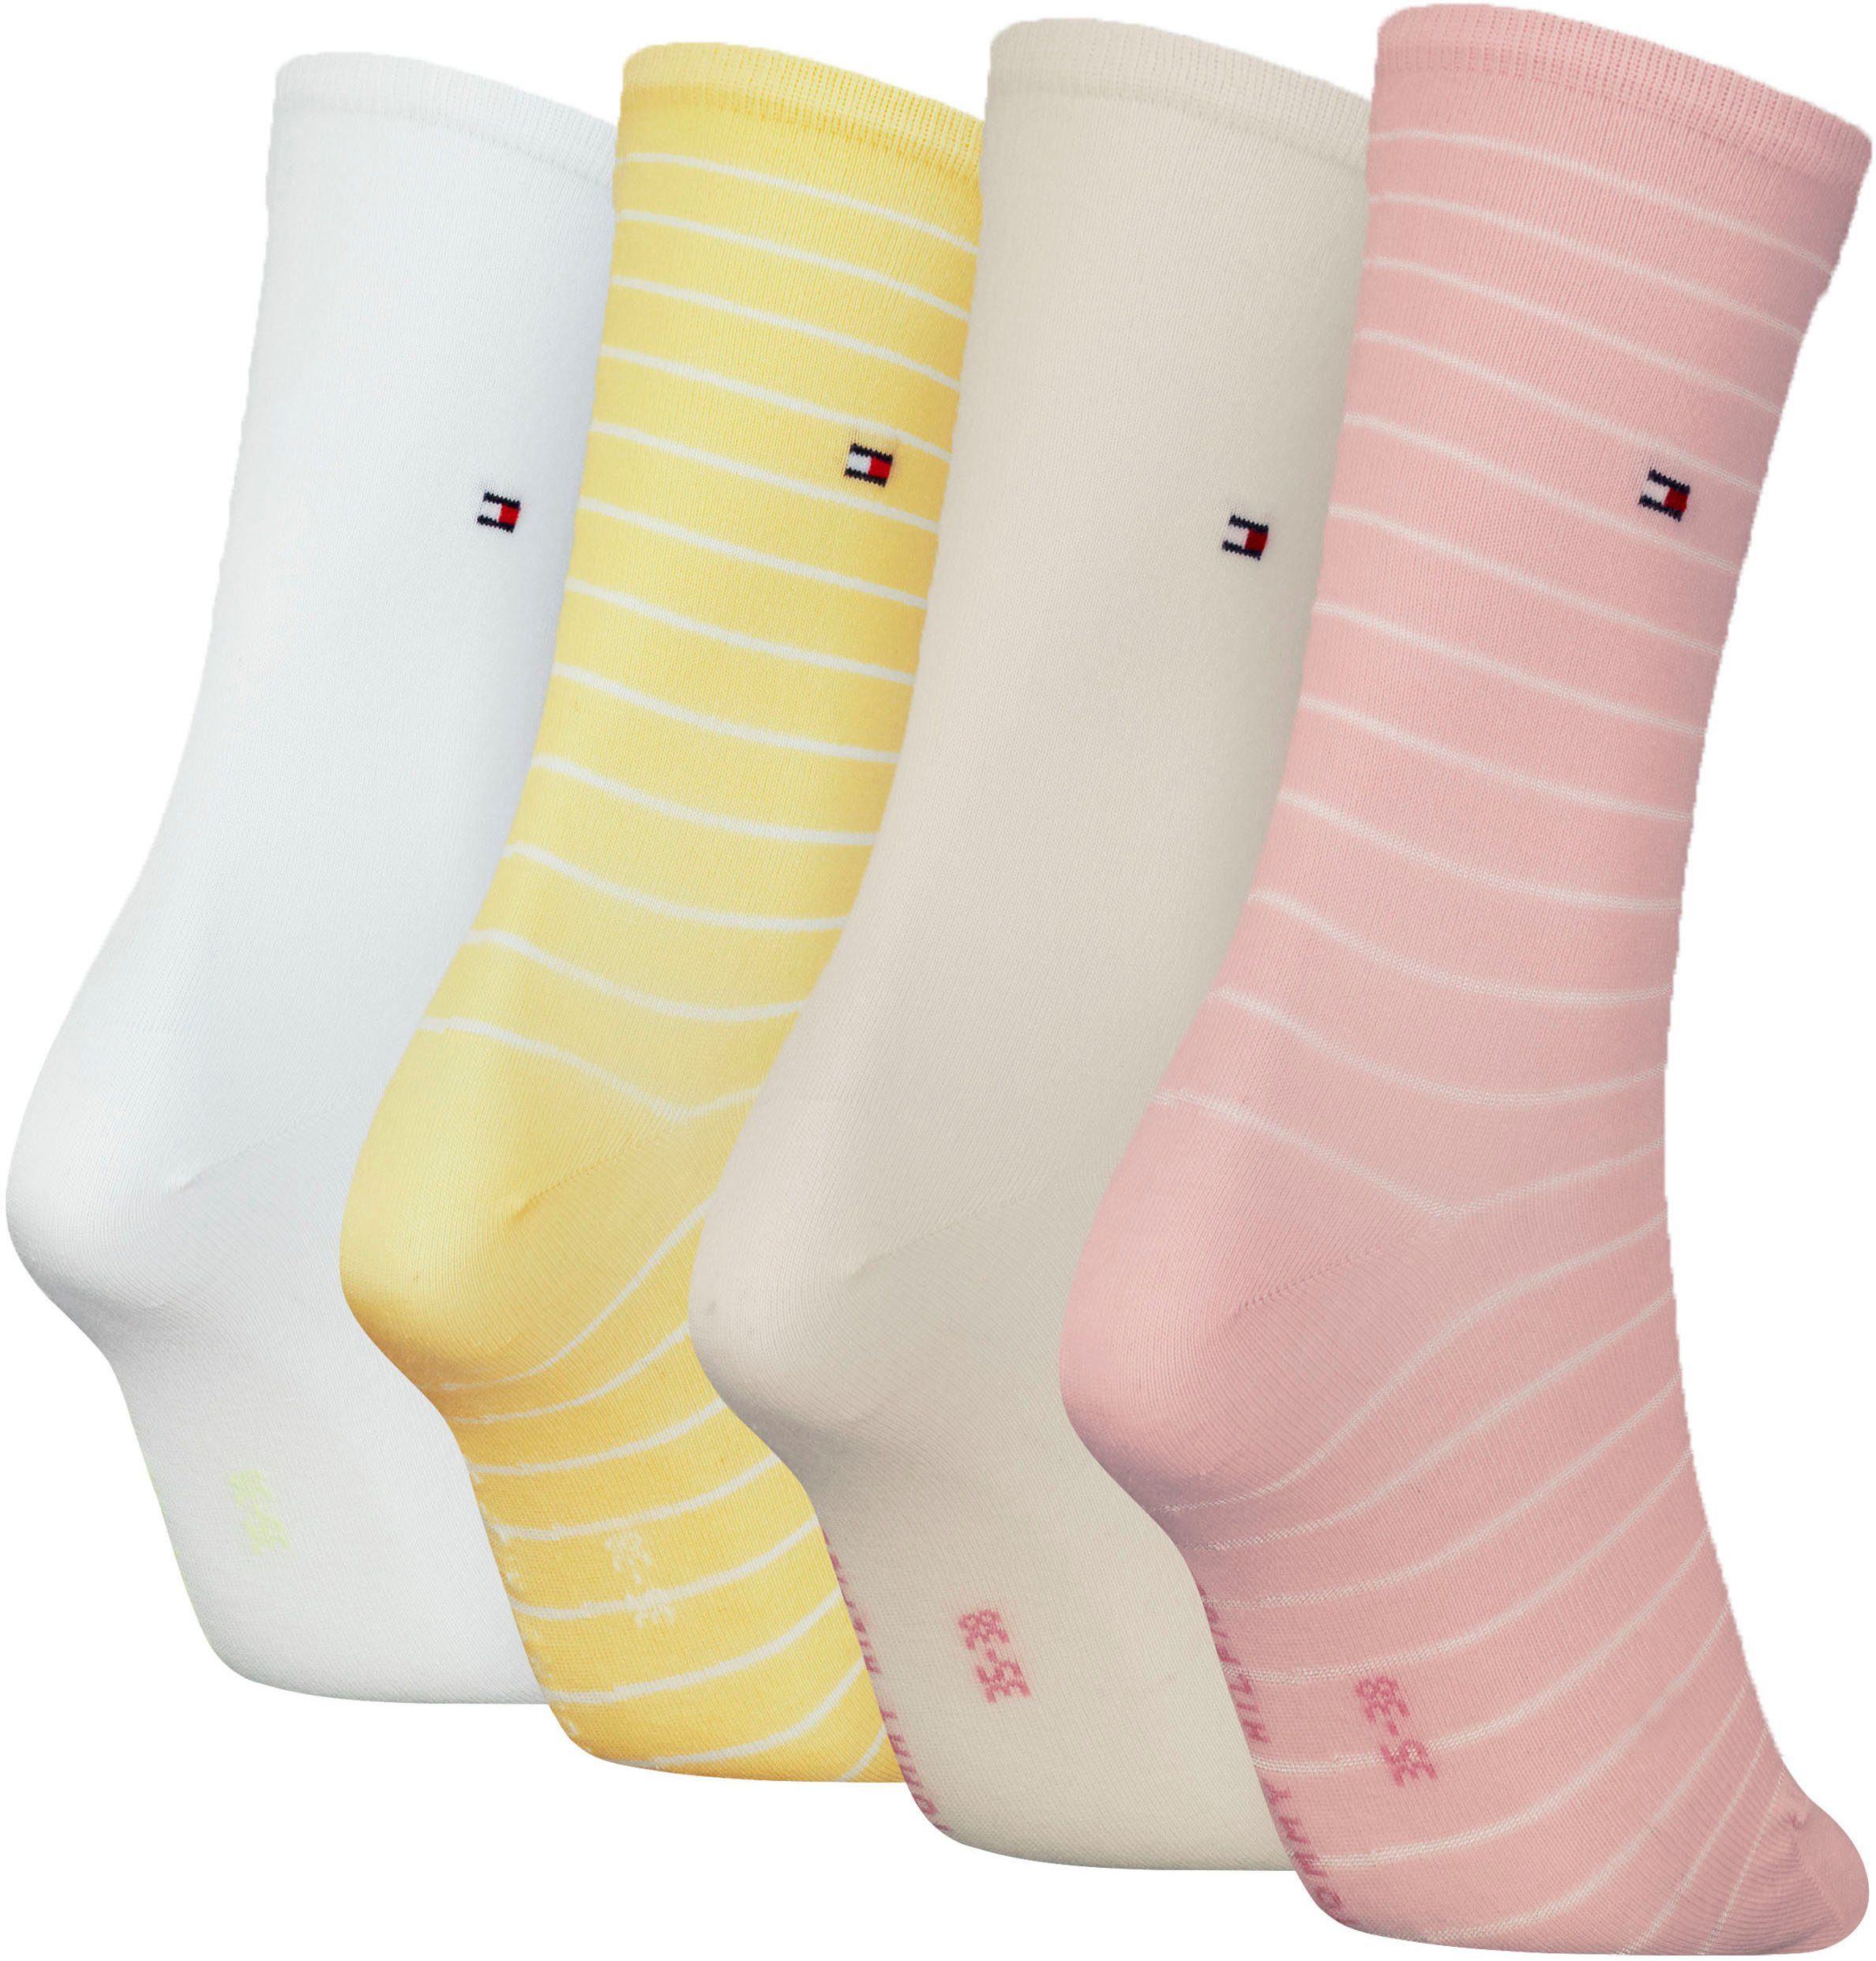 Tommy Hilfiger Socken klassisches raffiniertes pink-yellow-white Streifendesign